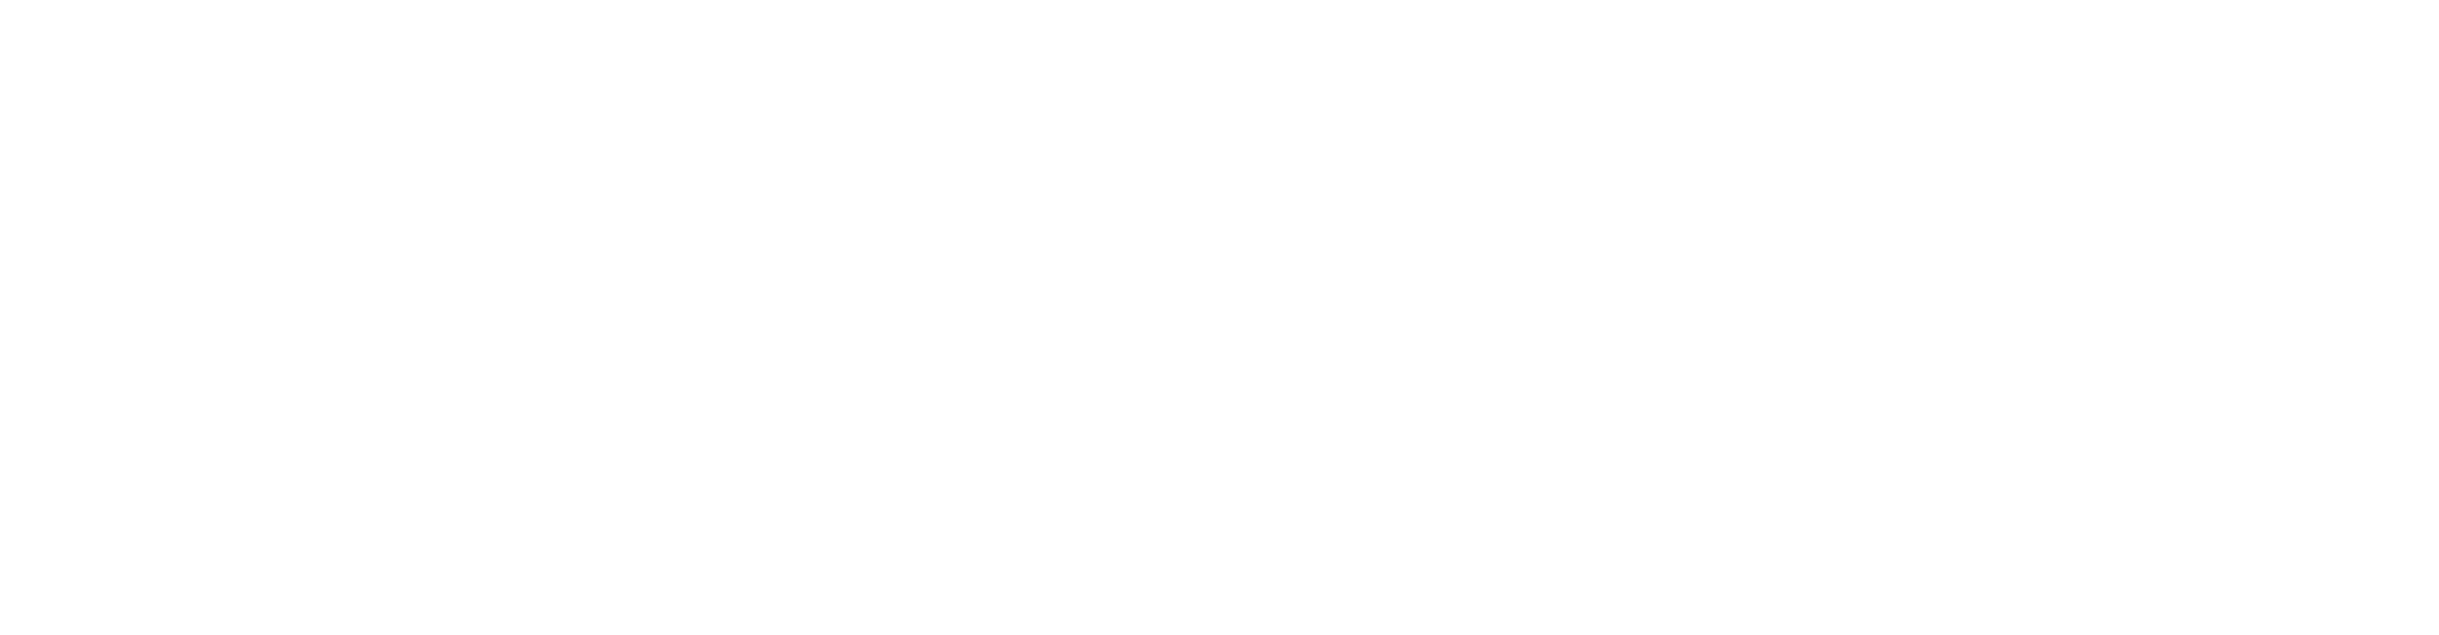 olympaid-logo